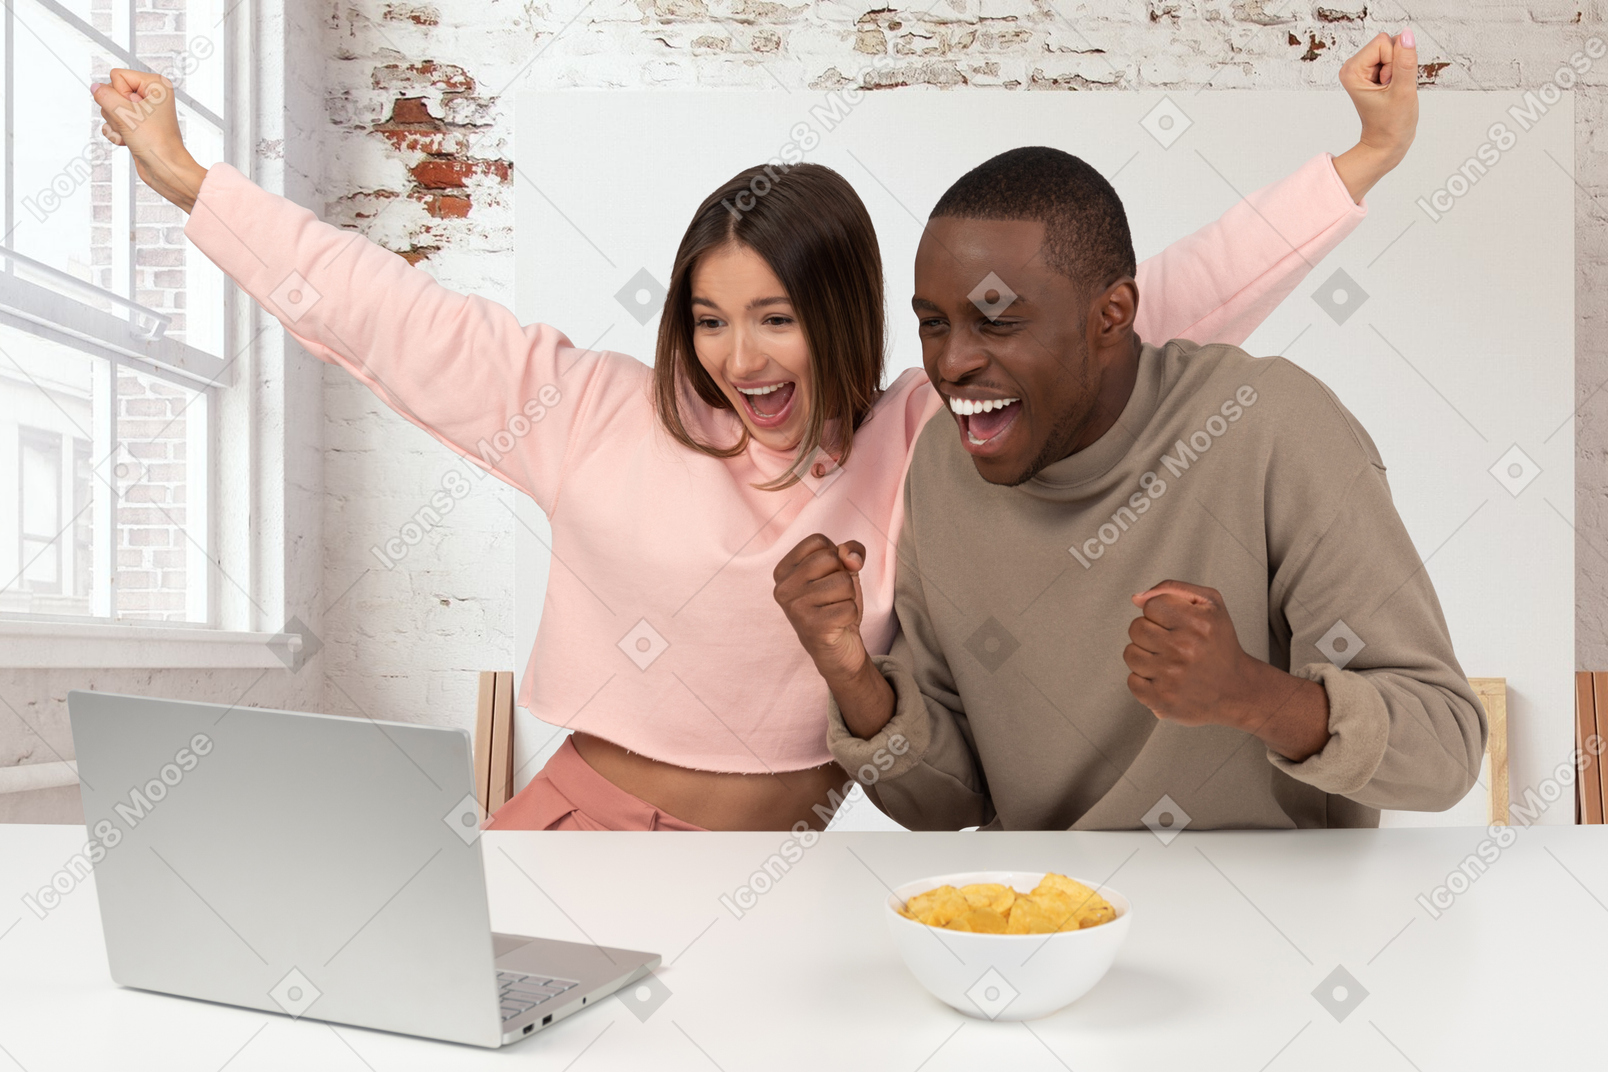 Joyful couple looking at laptop